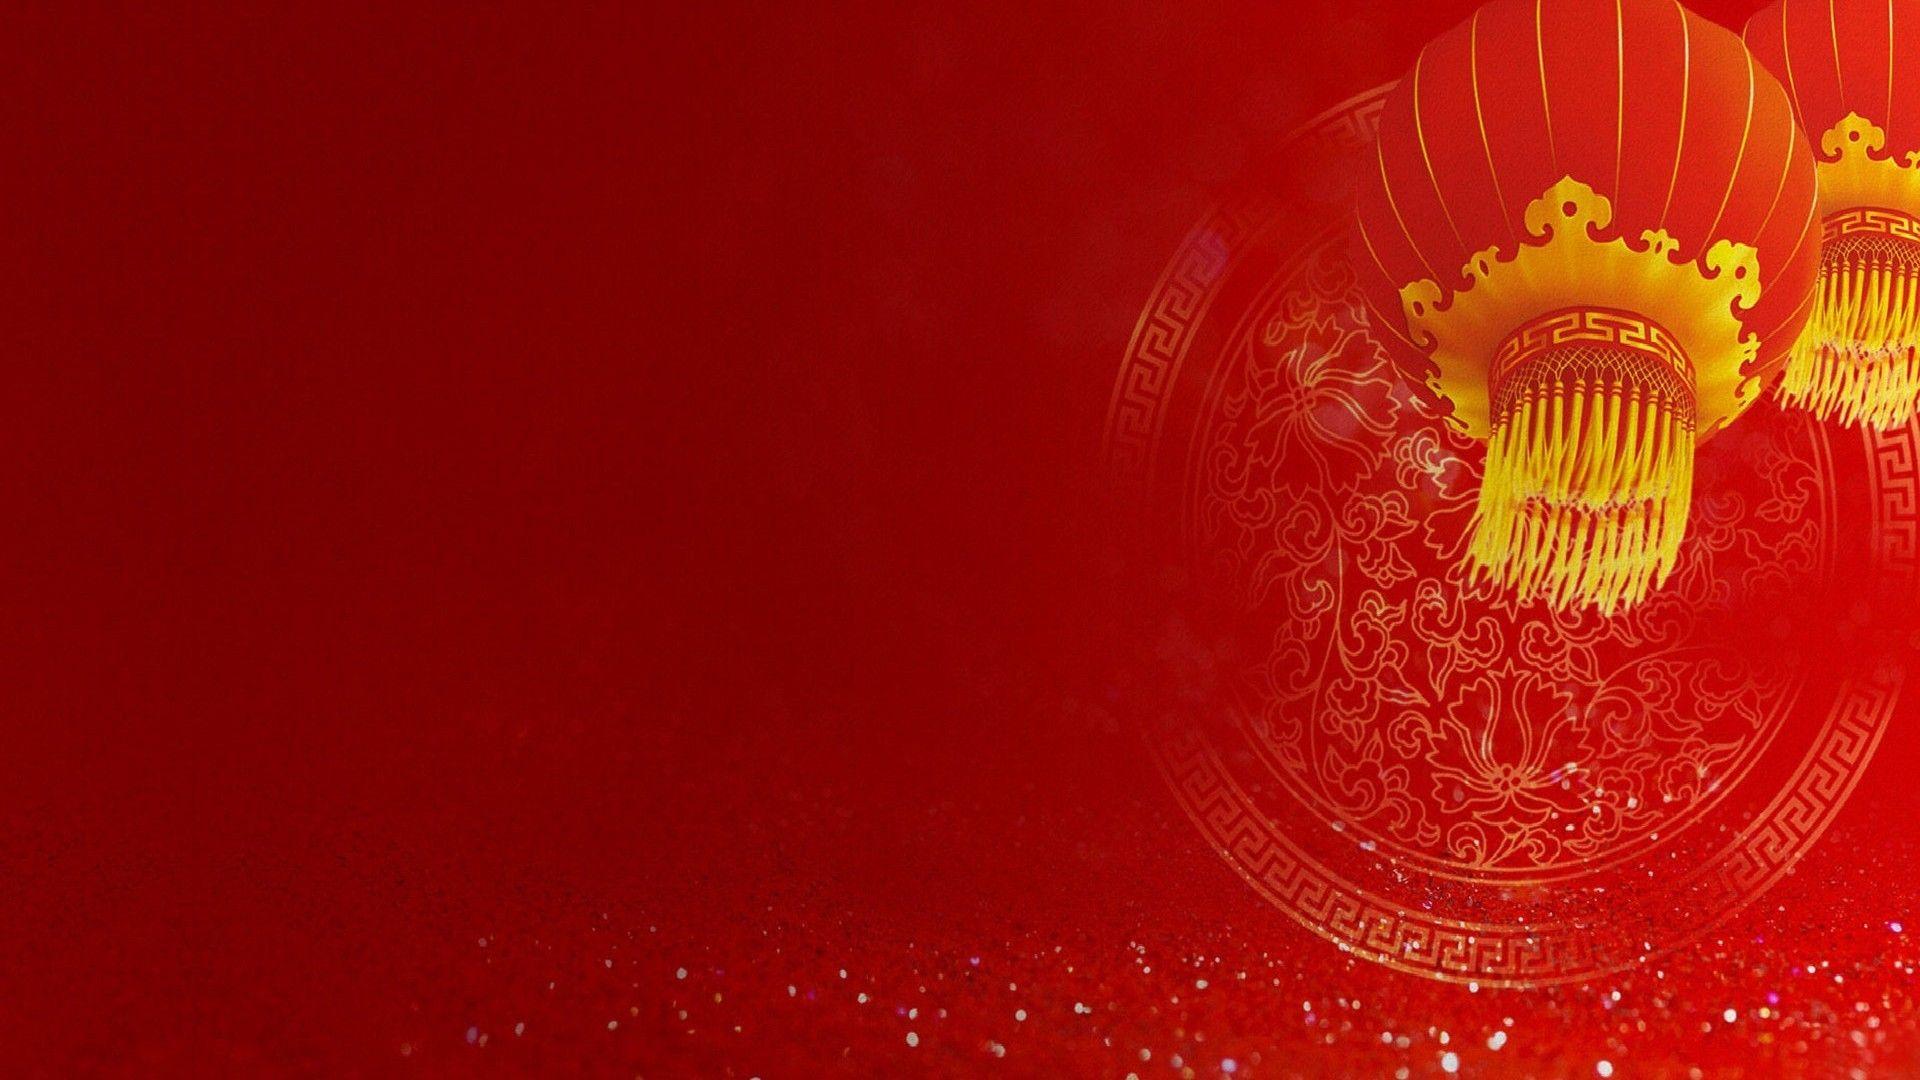 Hình nền Tết Trung Quốc: Với bộ sưu tập hình nền Tết Trung Quốc đa dạng và phong phú, bạn sẽ được chiêm ngưỡng những biểu tượng đặc trưng nhất của Tết Nguyên Đán. Còn chần chừ gì mà không cập nhật ngay cho chiếc máy tính của bạn những gam màu của mùa Tết này.